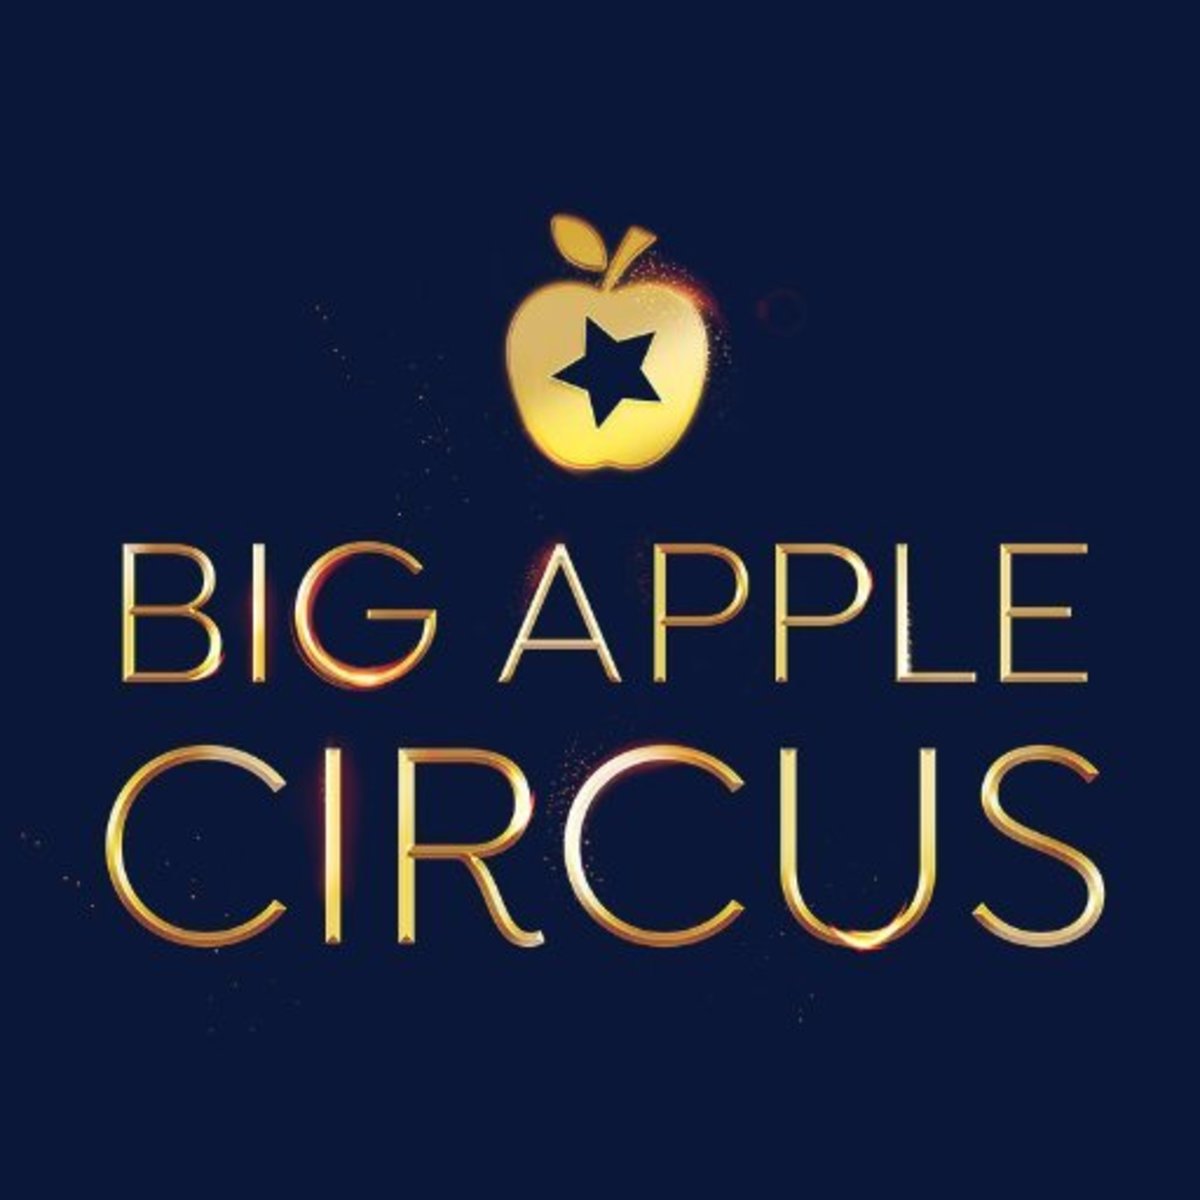 Big Apple Circus Seating Chart Nyc